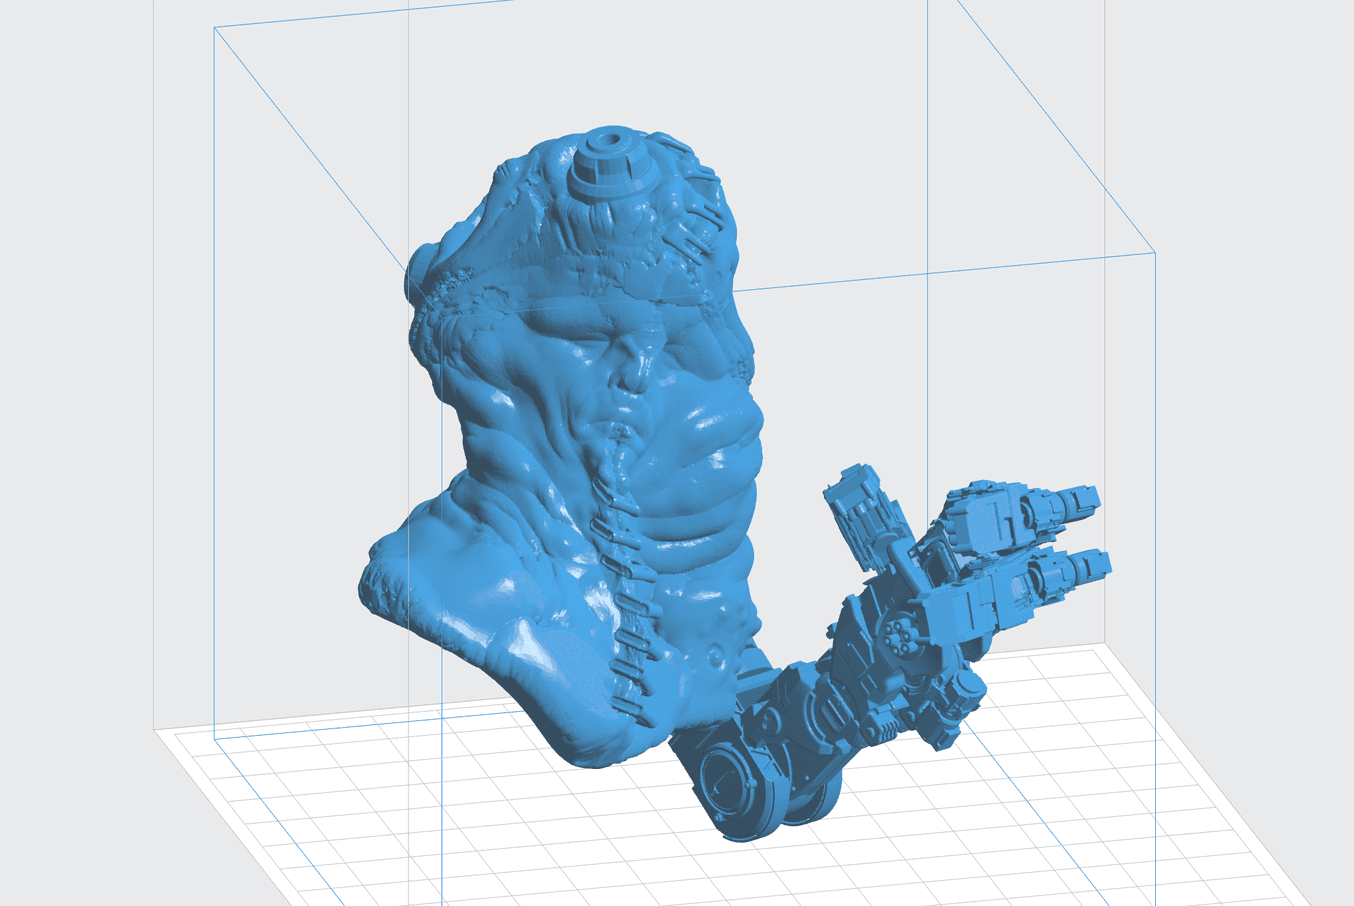 Le logiciel PreForm prépare les modèles de Landis pour impression sur son imprimante 3D Formlabs, ce qui accélère son procédé de conception.